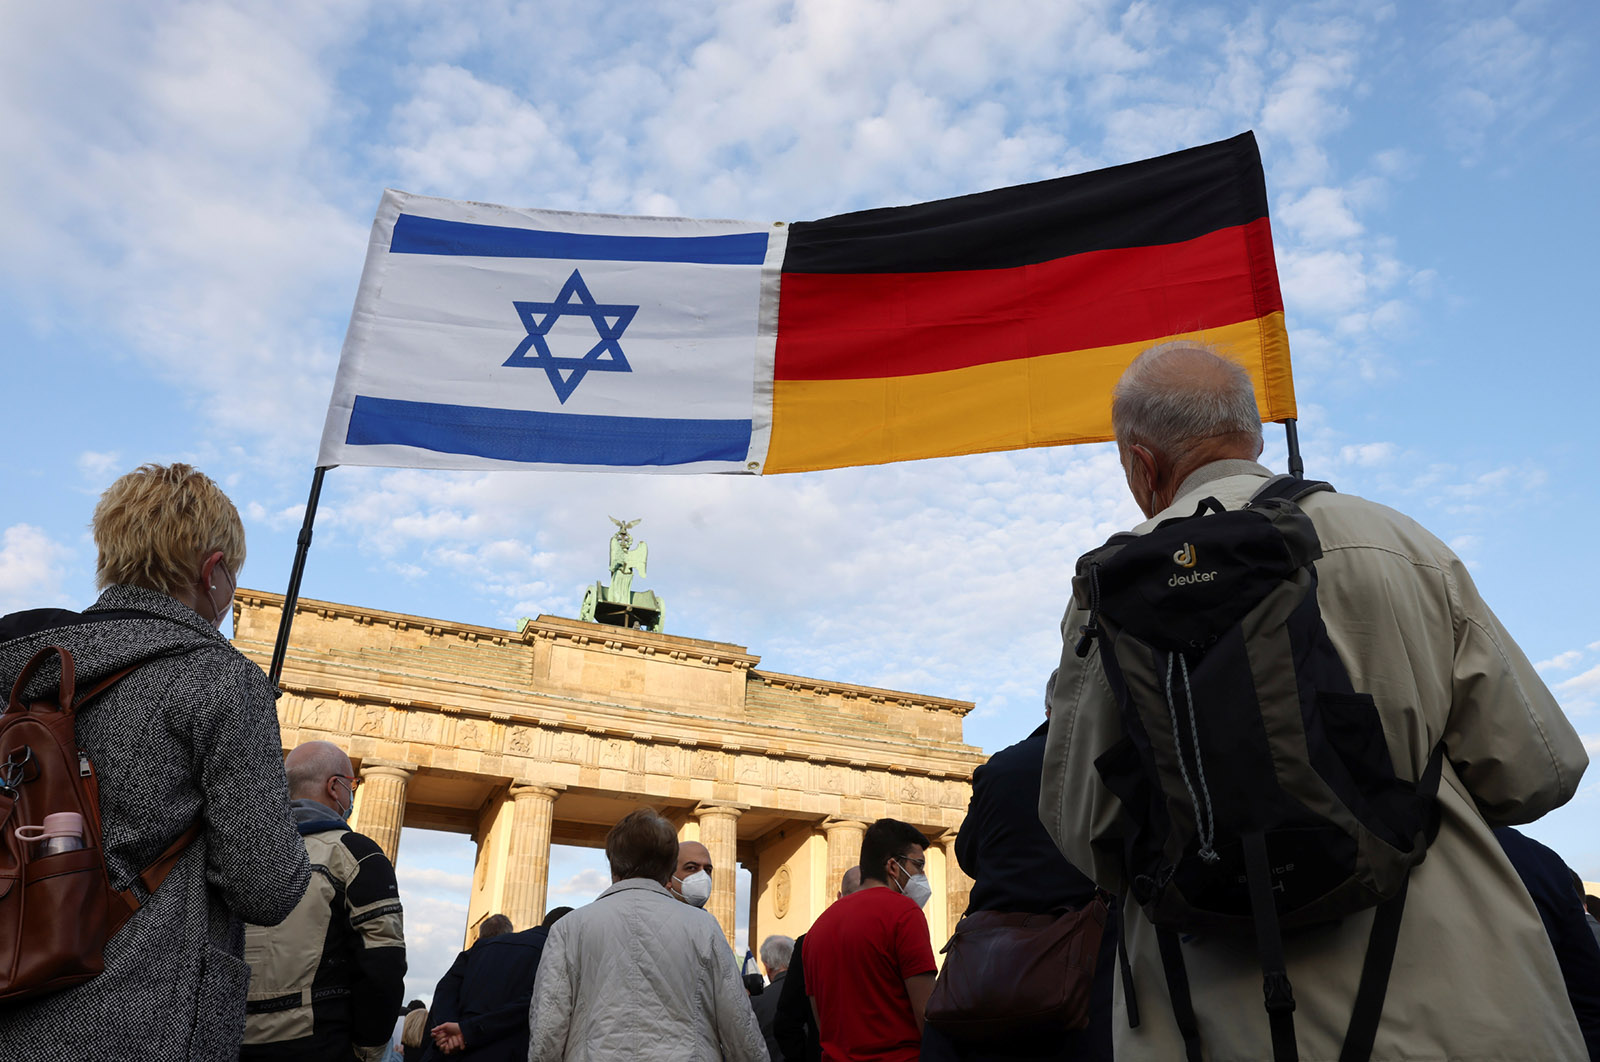 Bandiera israeliana e bandiera tedesca attaccate e tenute insieme in aria dai manifestanti contro l'antisemitismo, Porta di Brandeburgo, Berlino